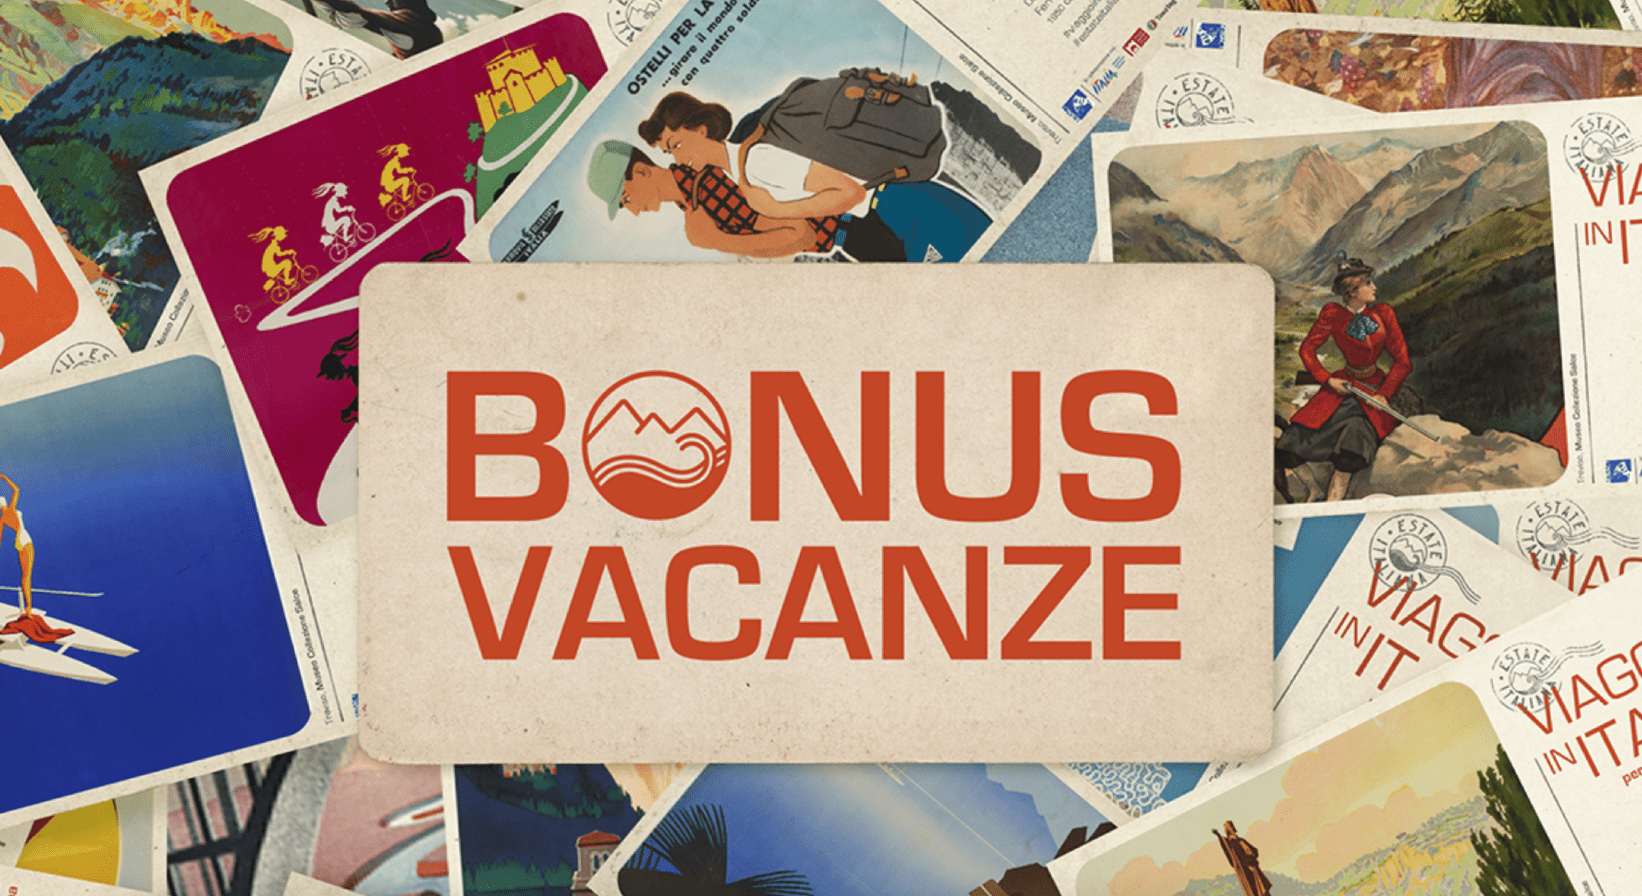 Bonus Vacanze under 36